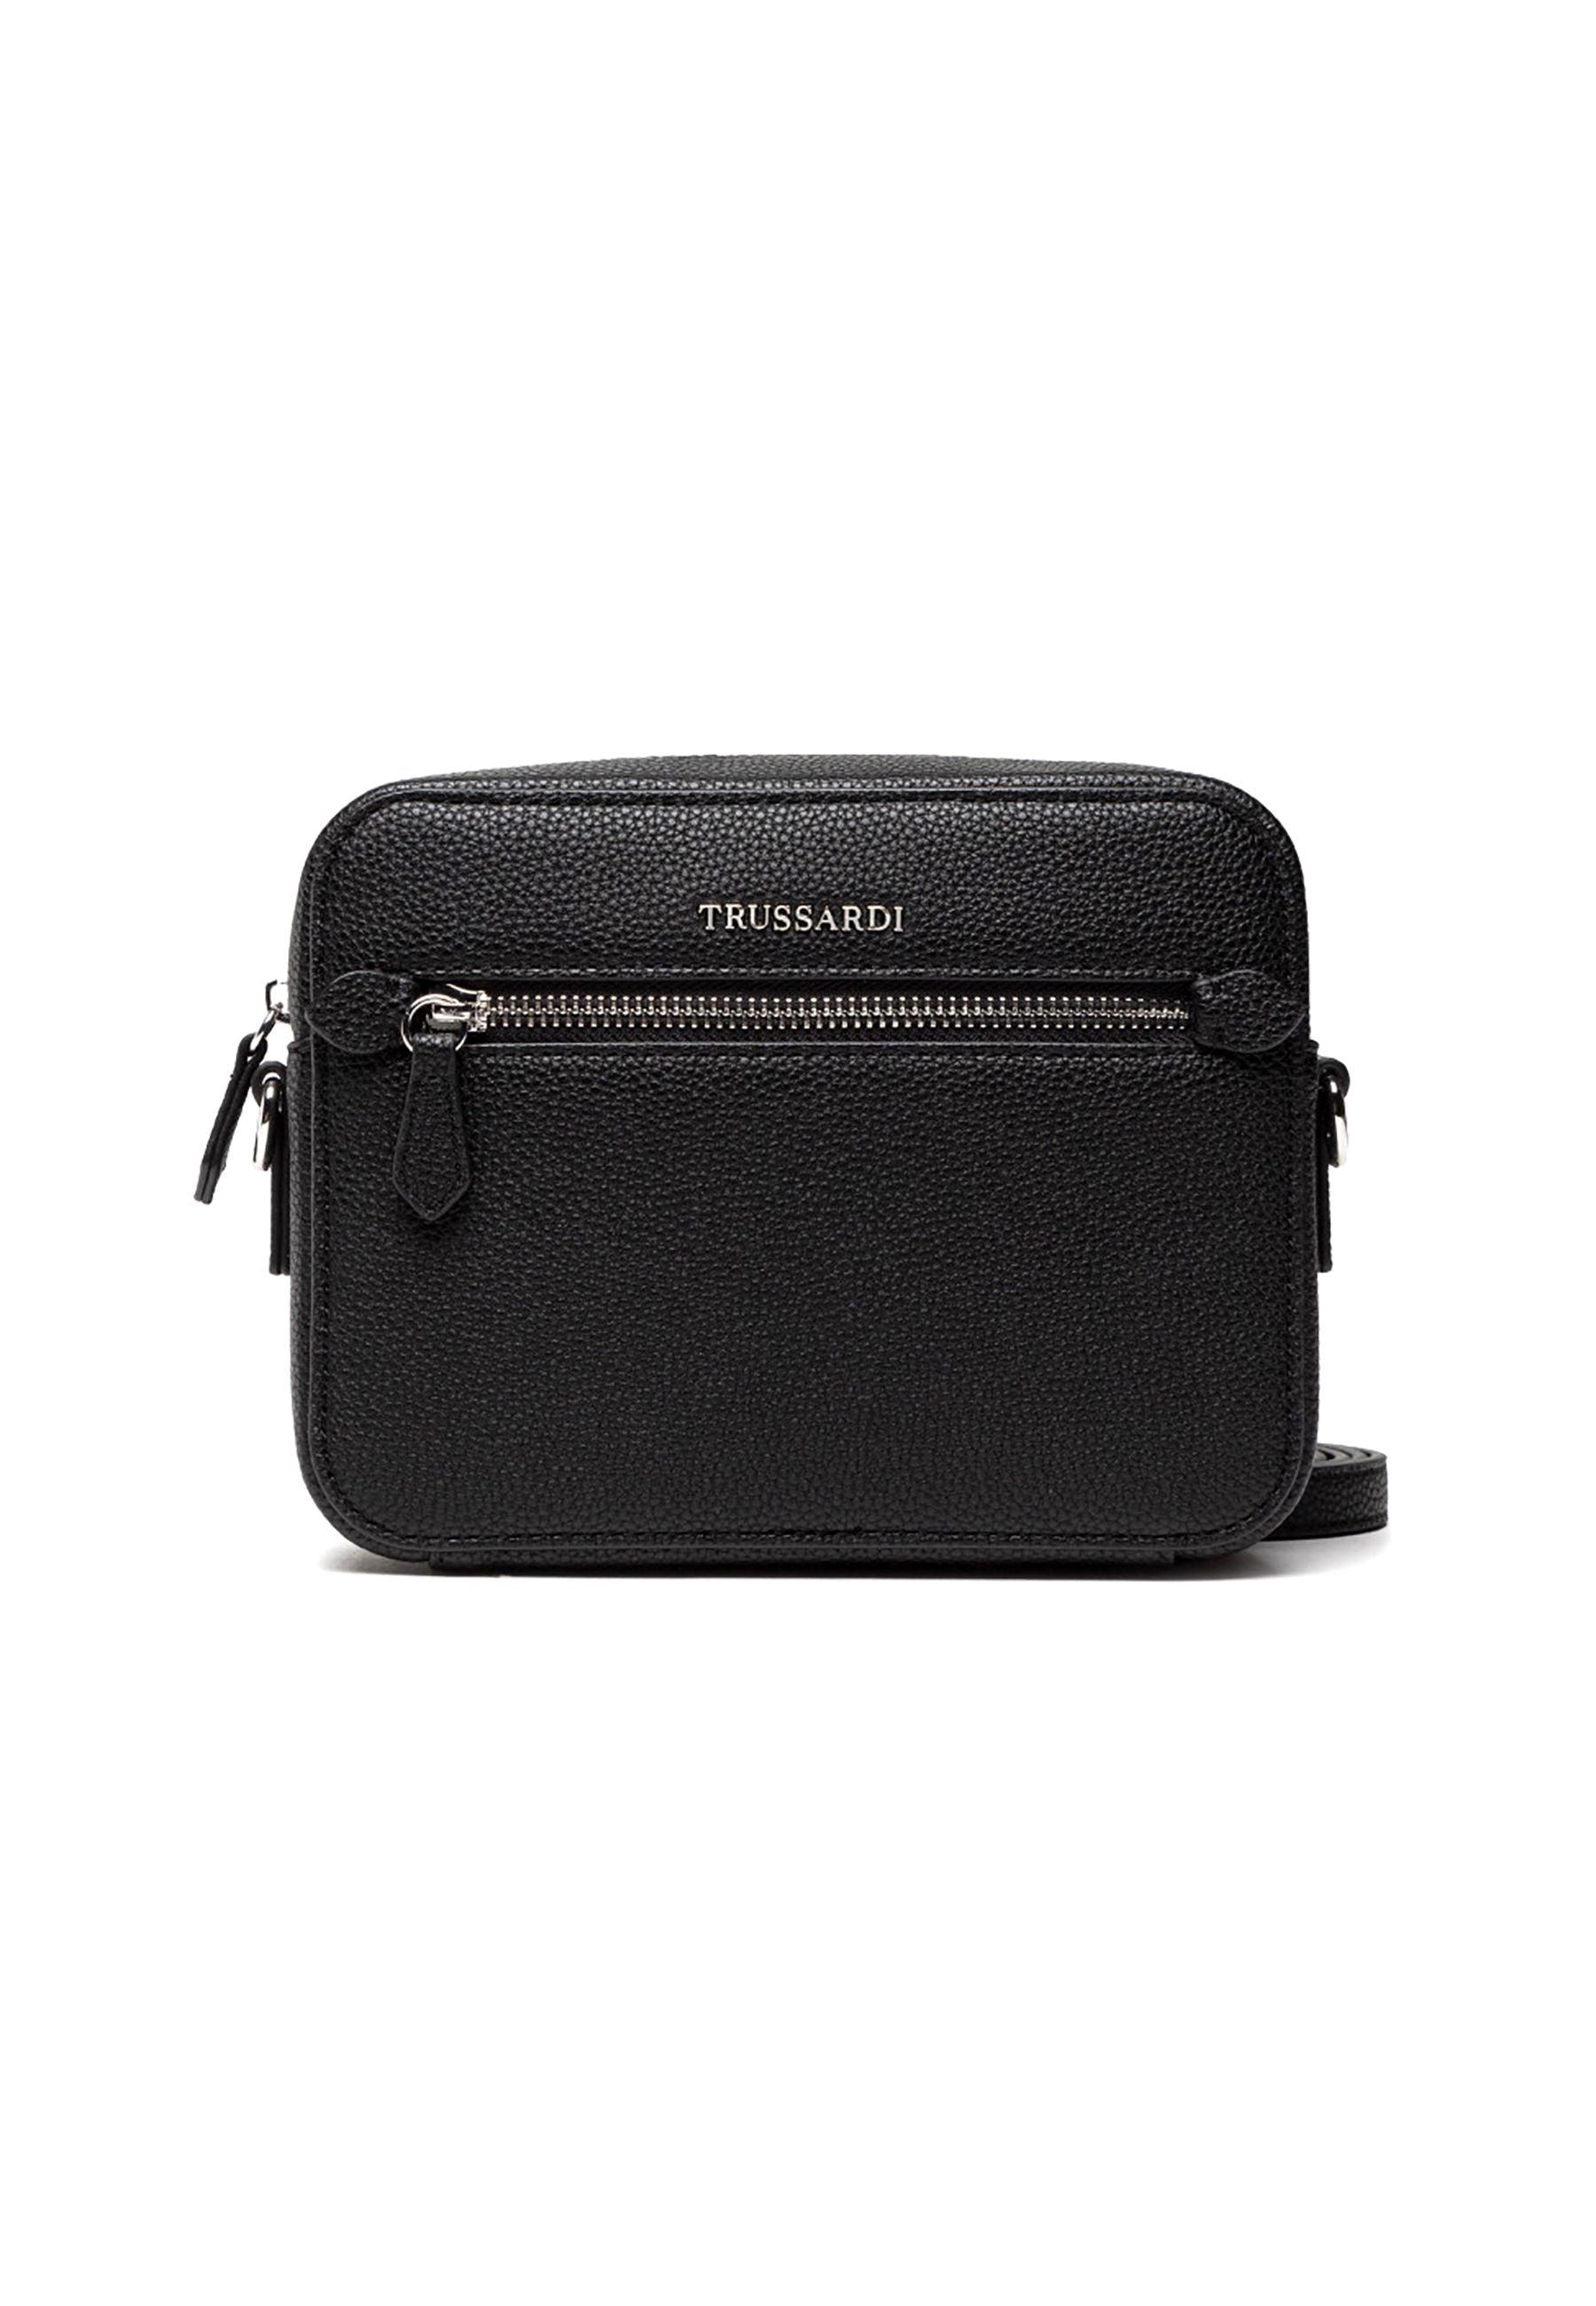 TRUSSARDI New Lily Camera Bag Borsa Black 75B01421 - Sandrini Calzature e Abbigliamento